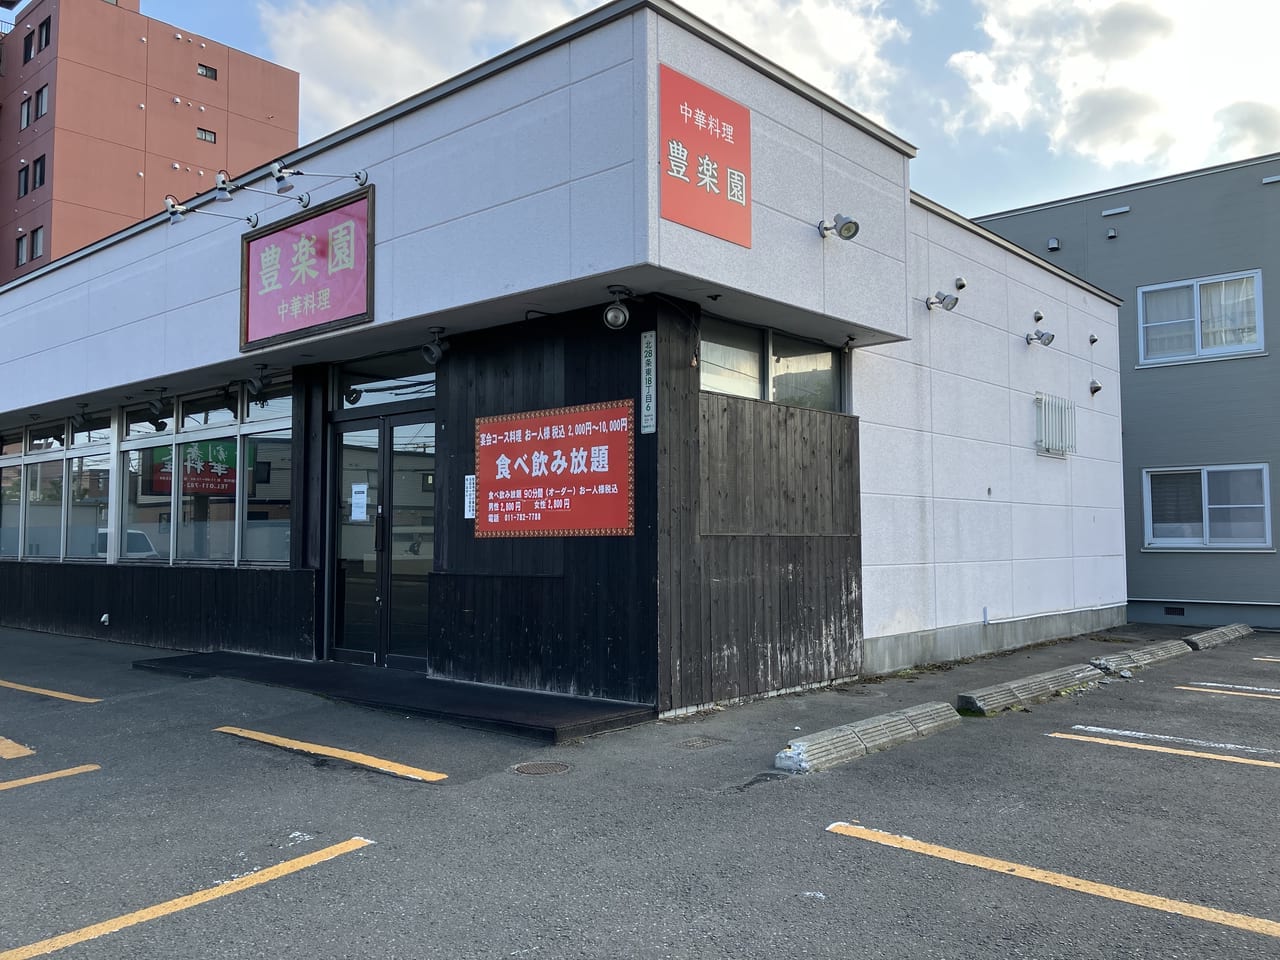 東区北28条の「中華料理豊楽園」が残念ながら5月末で閉店していました。